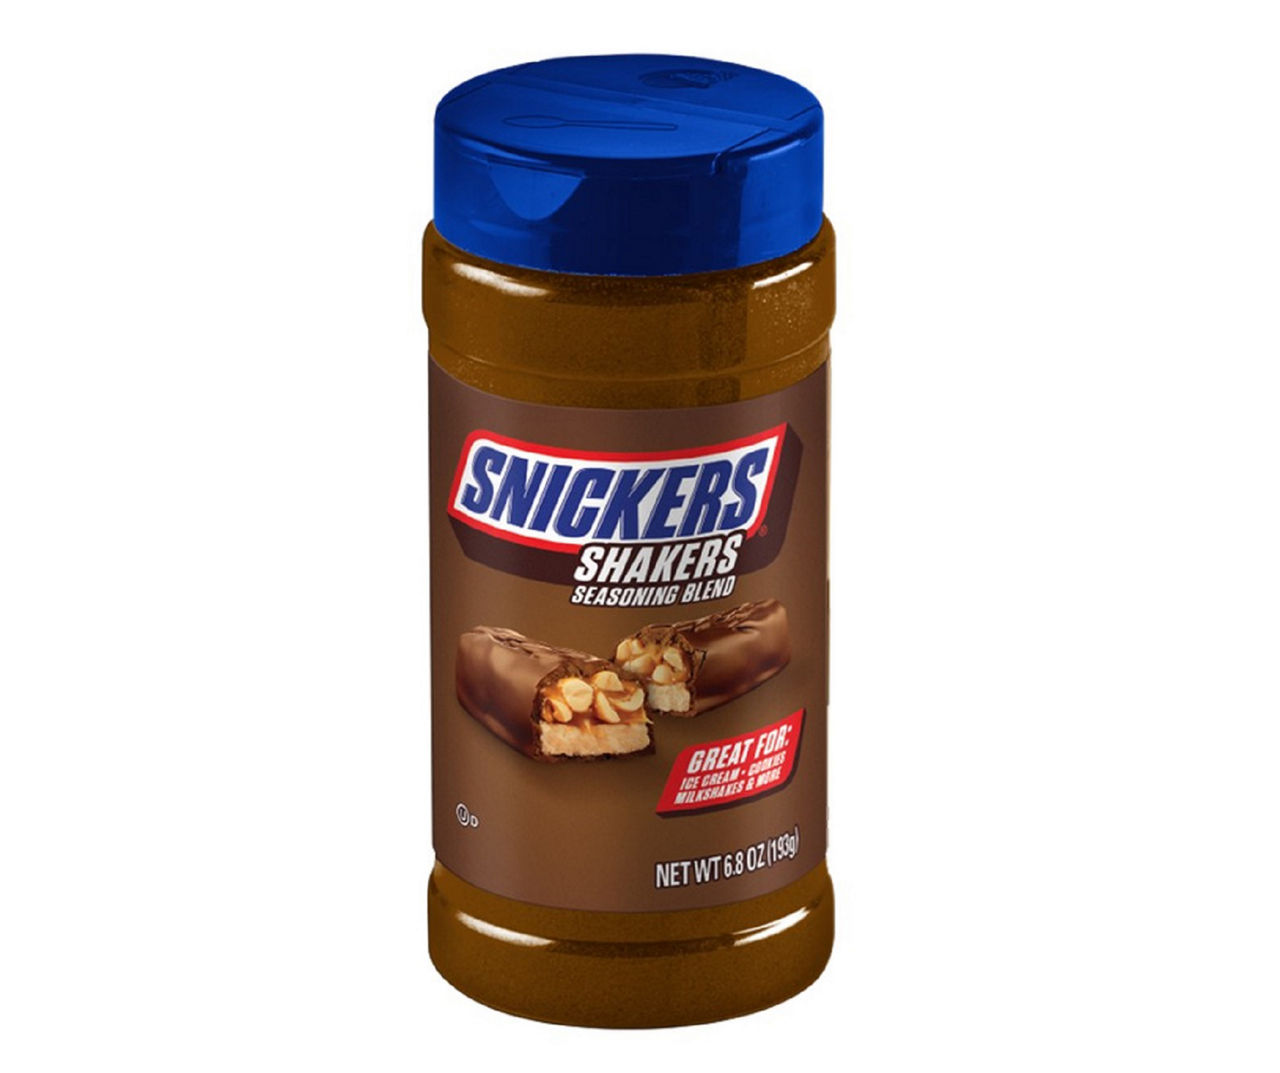 2 Snickers Shakers Seasoning Blend 9.5 oz Bottles